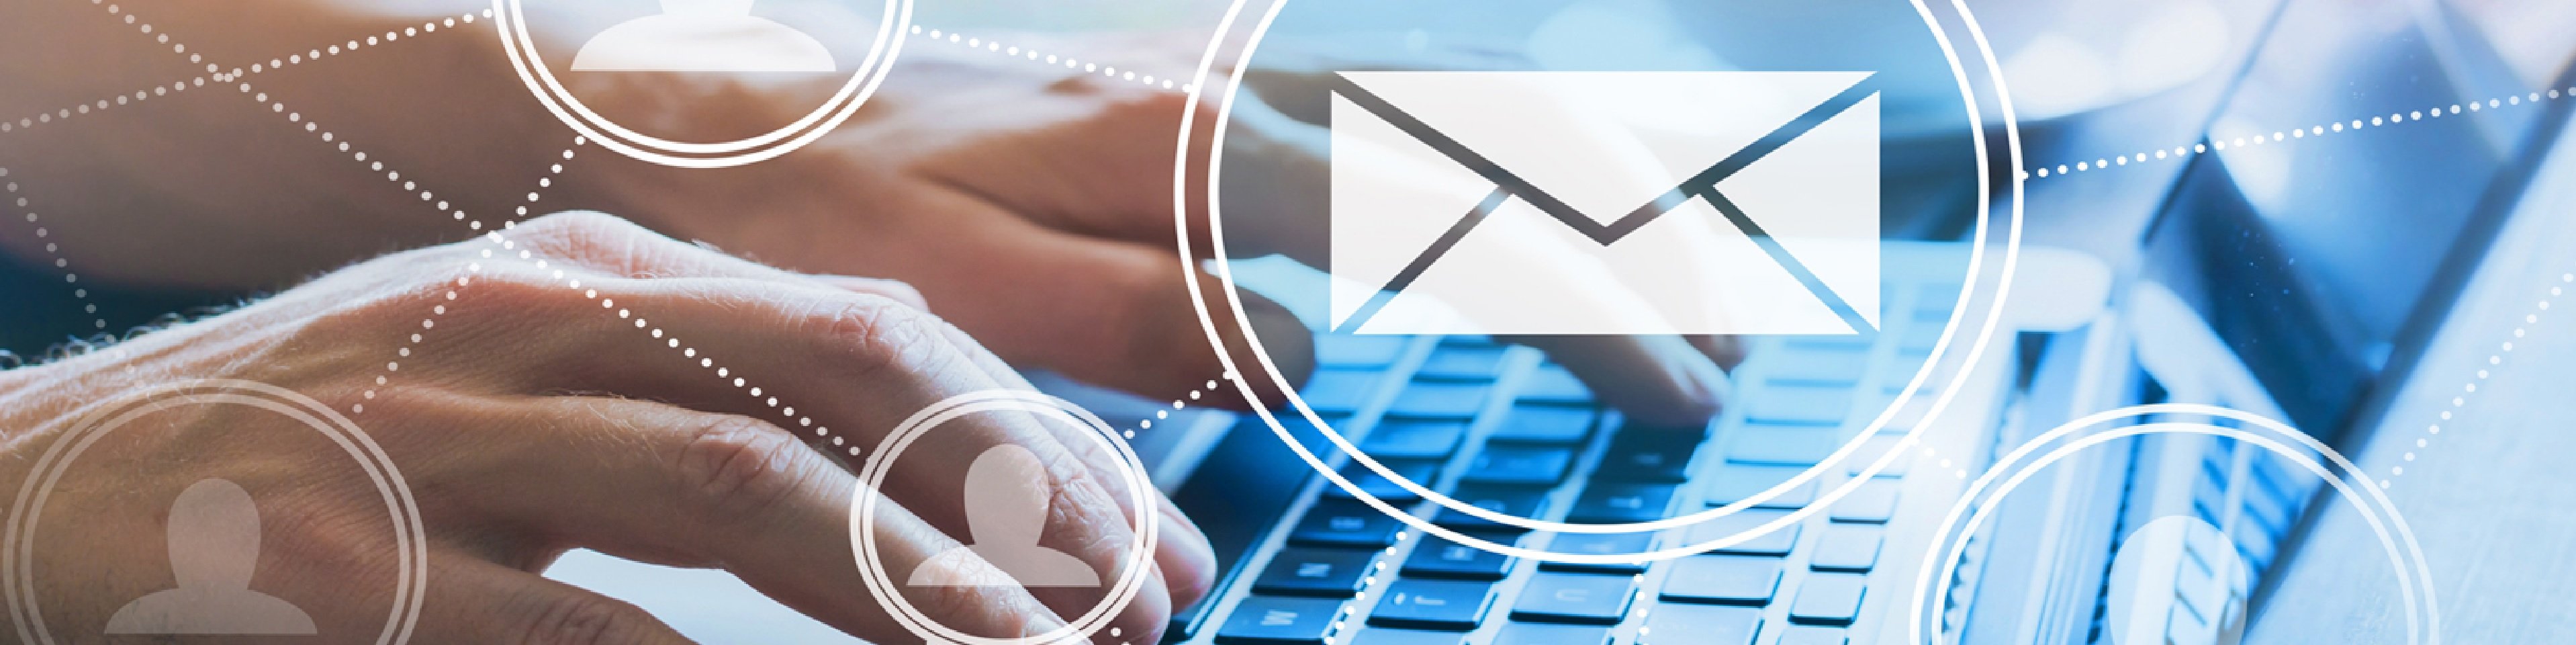 Zo stuurt u e-mailings die geopend én gelezen worden: 7 tips